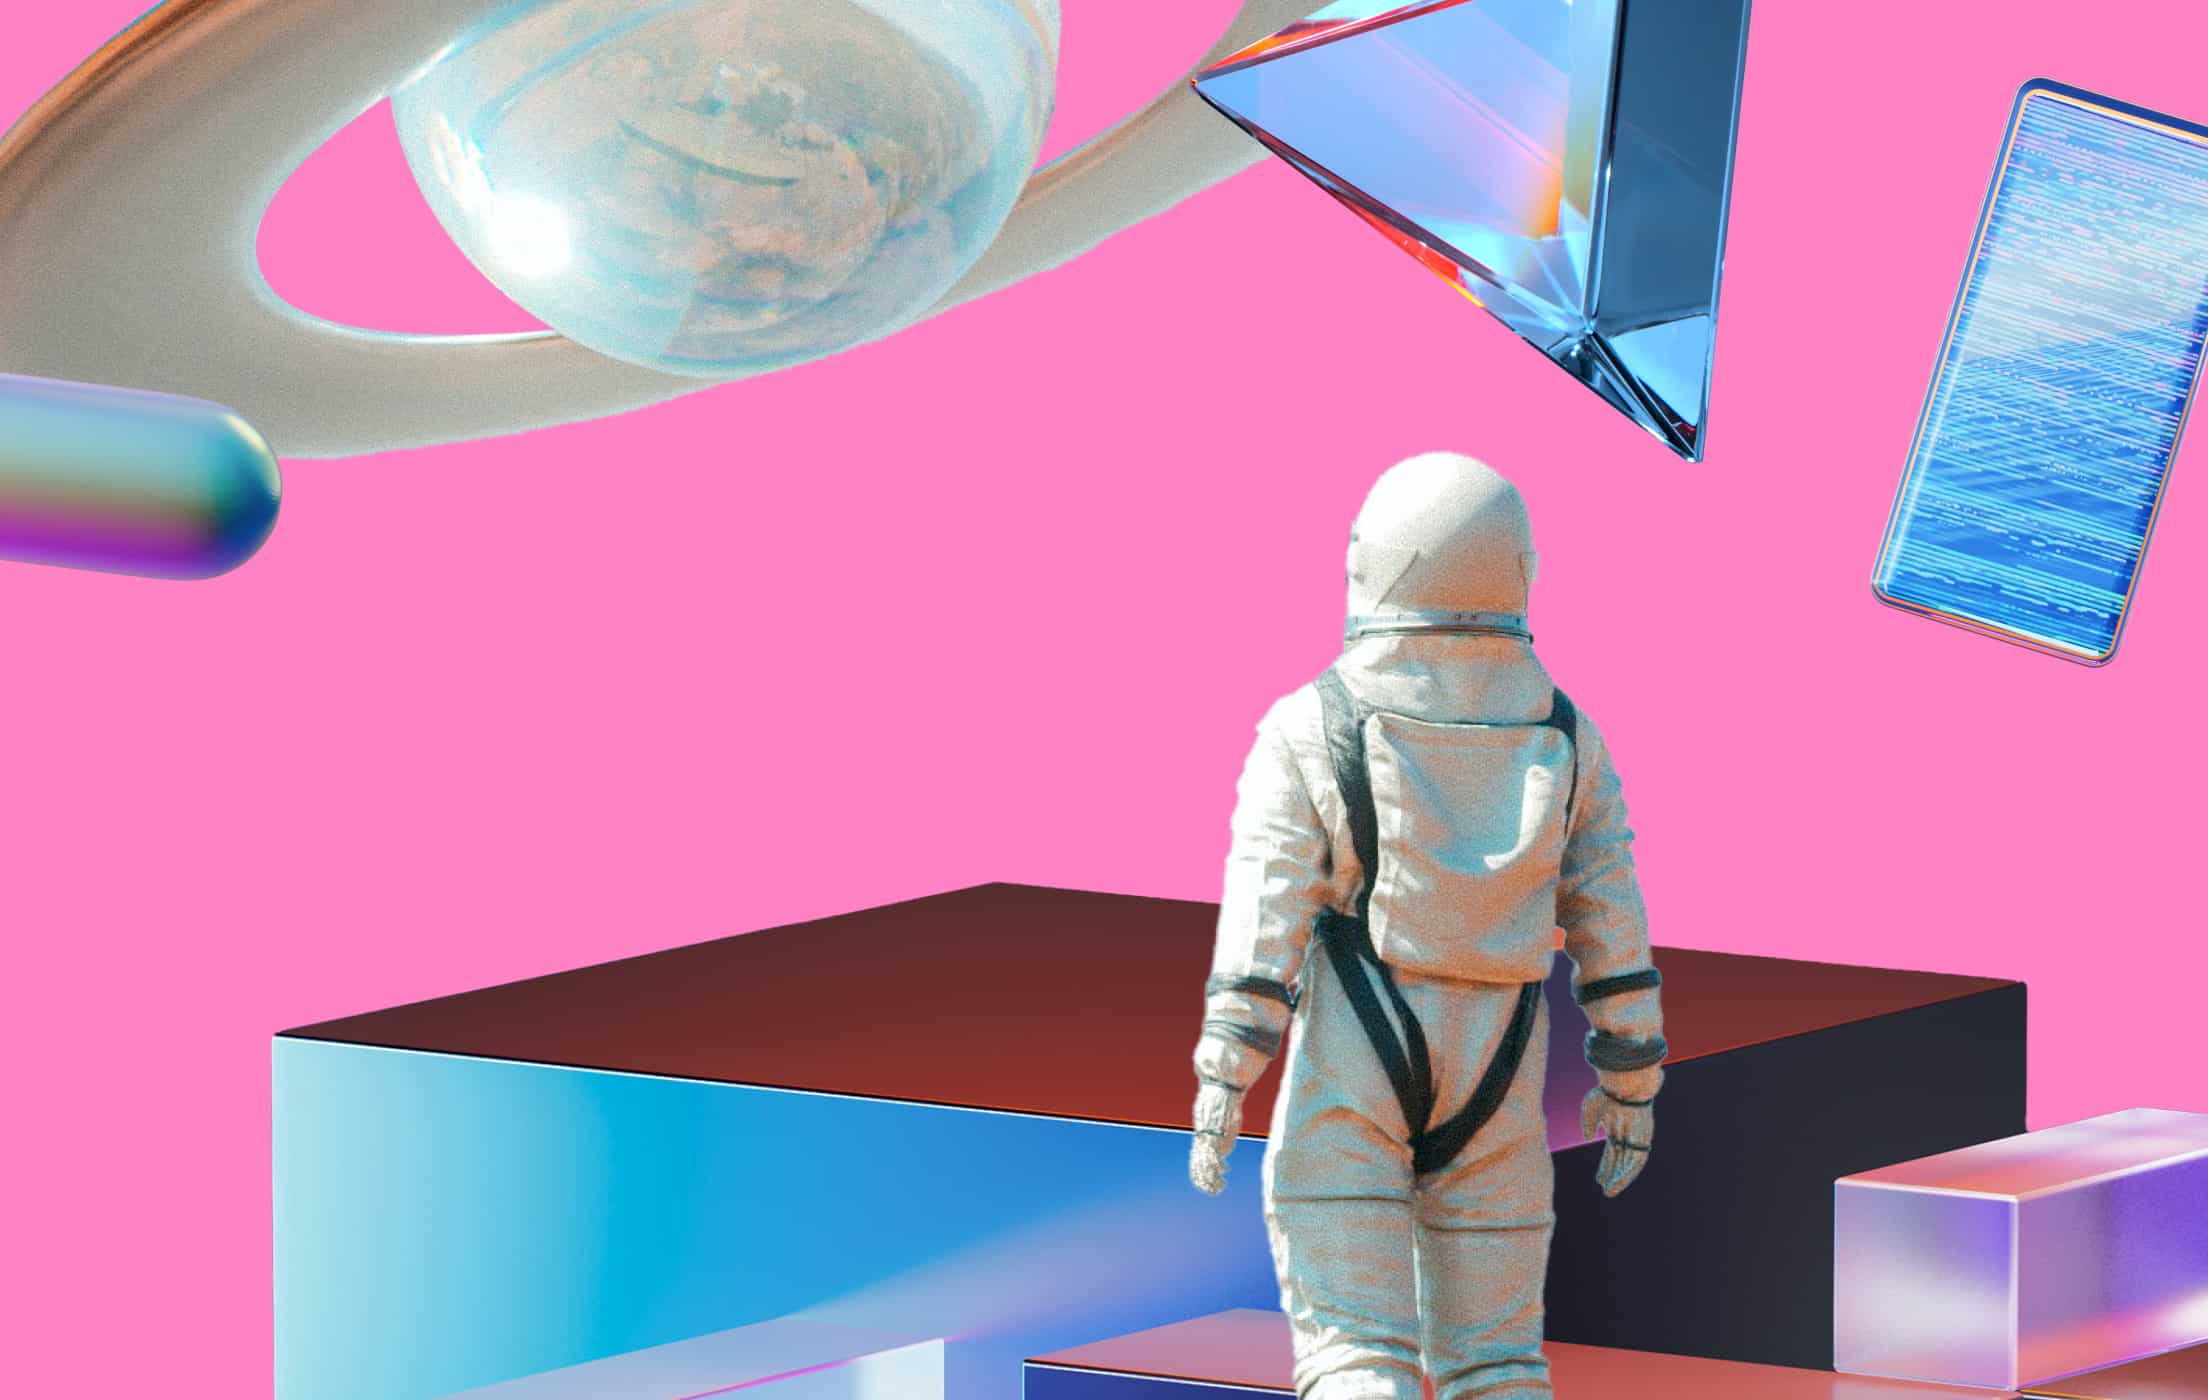 Un astronauta en un espacio artificial rosa